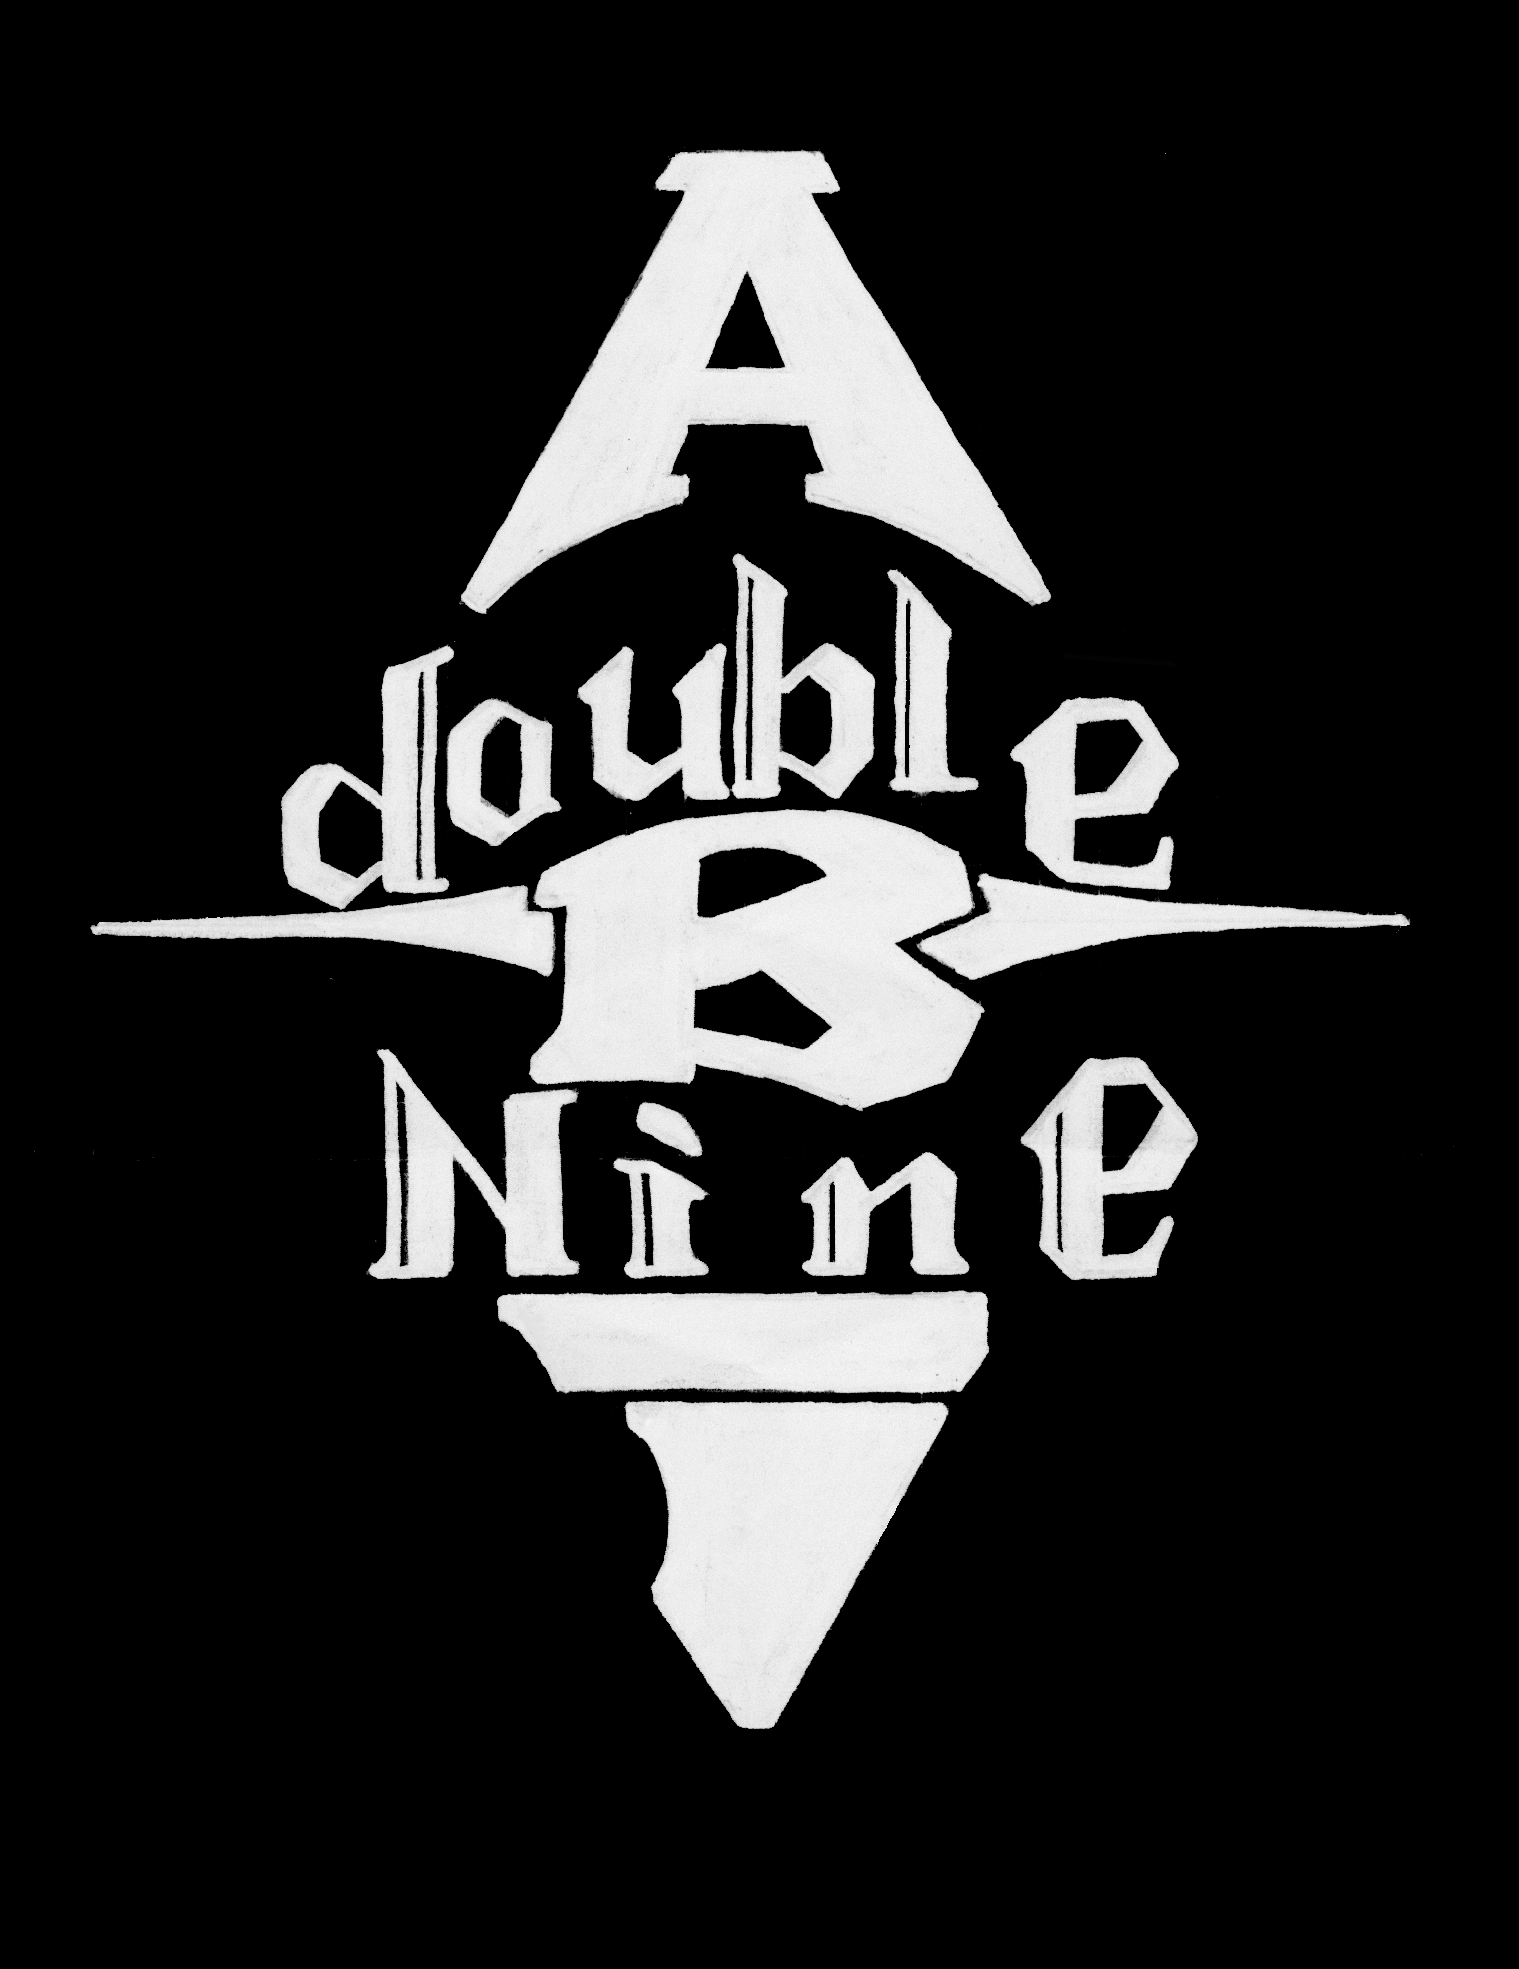 Abi-Doublenine